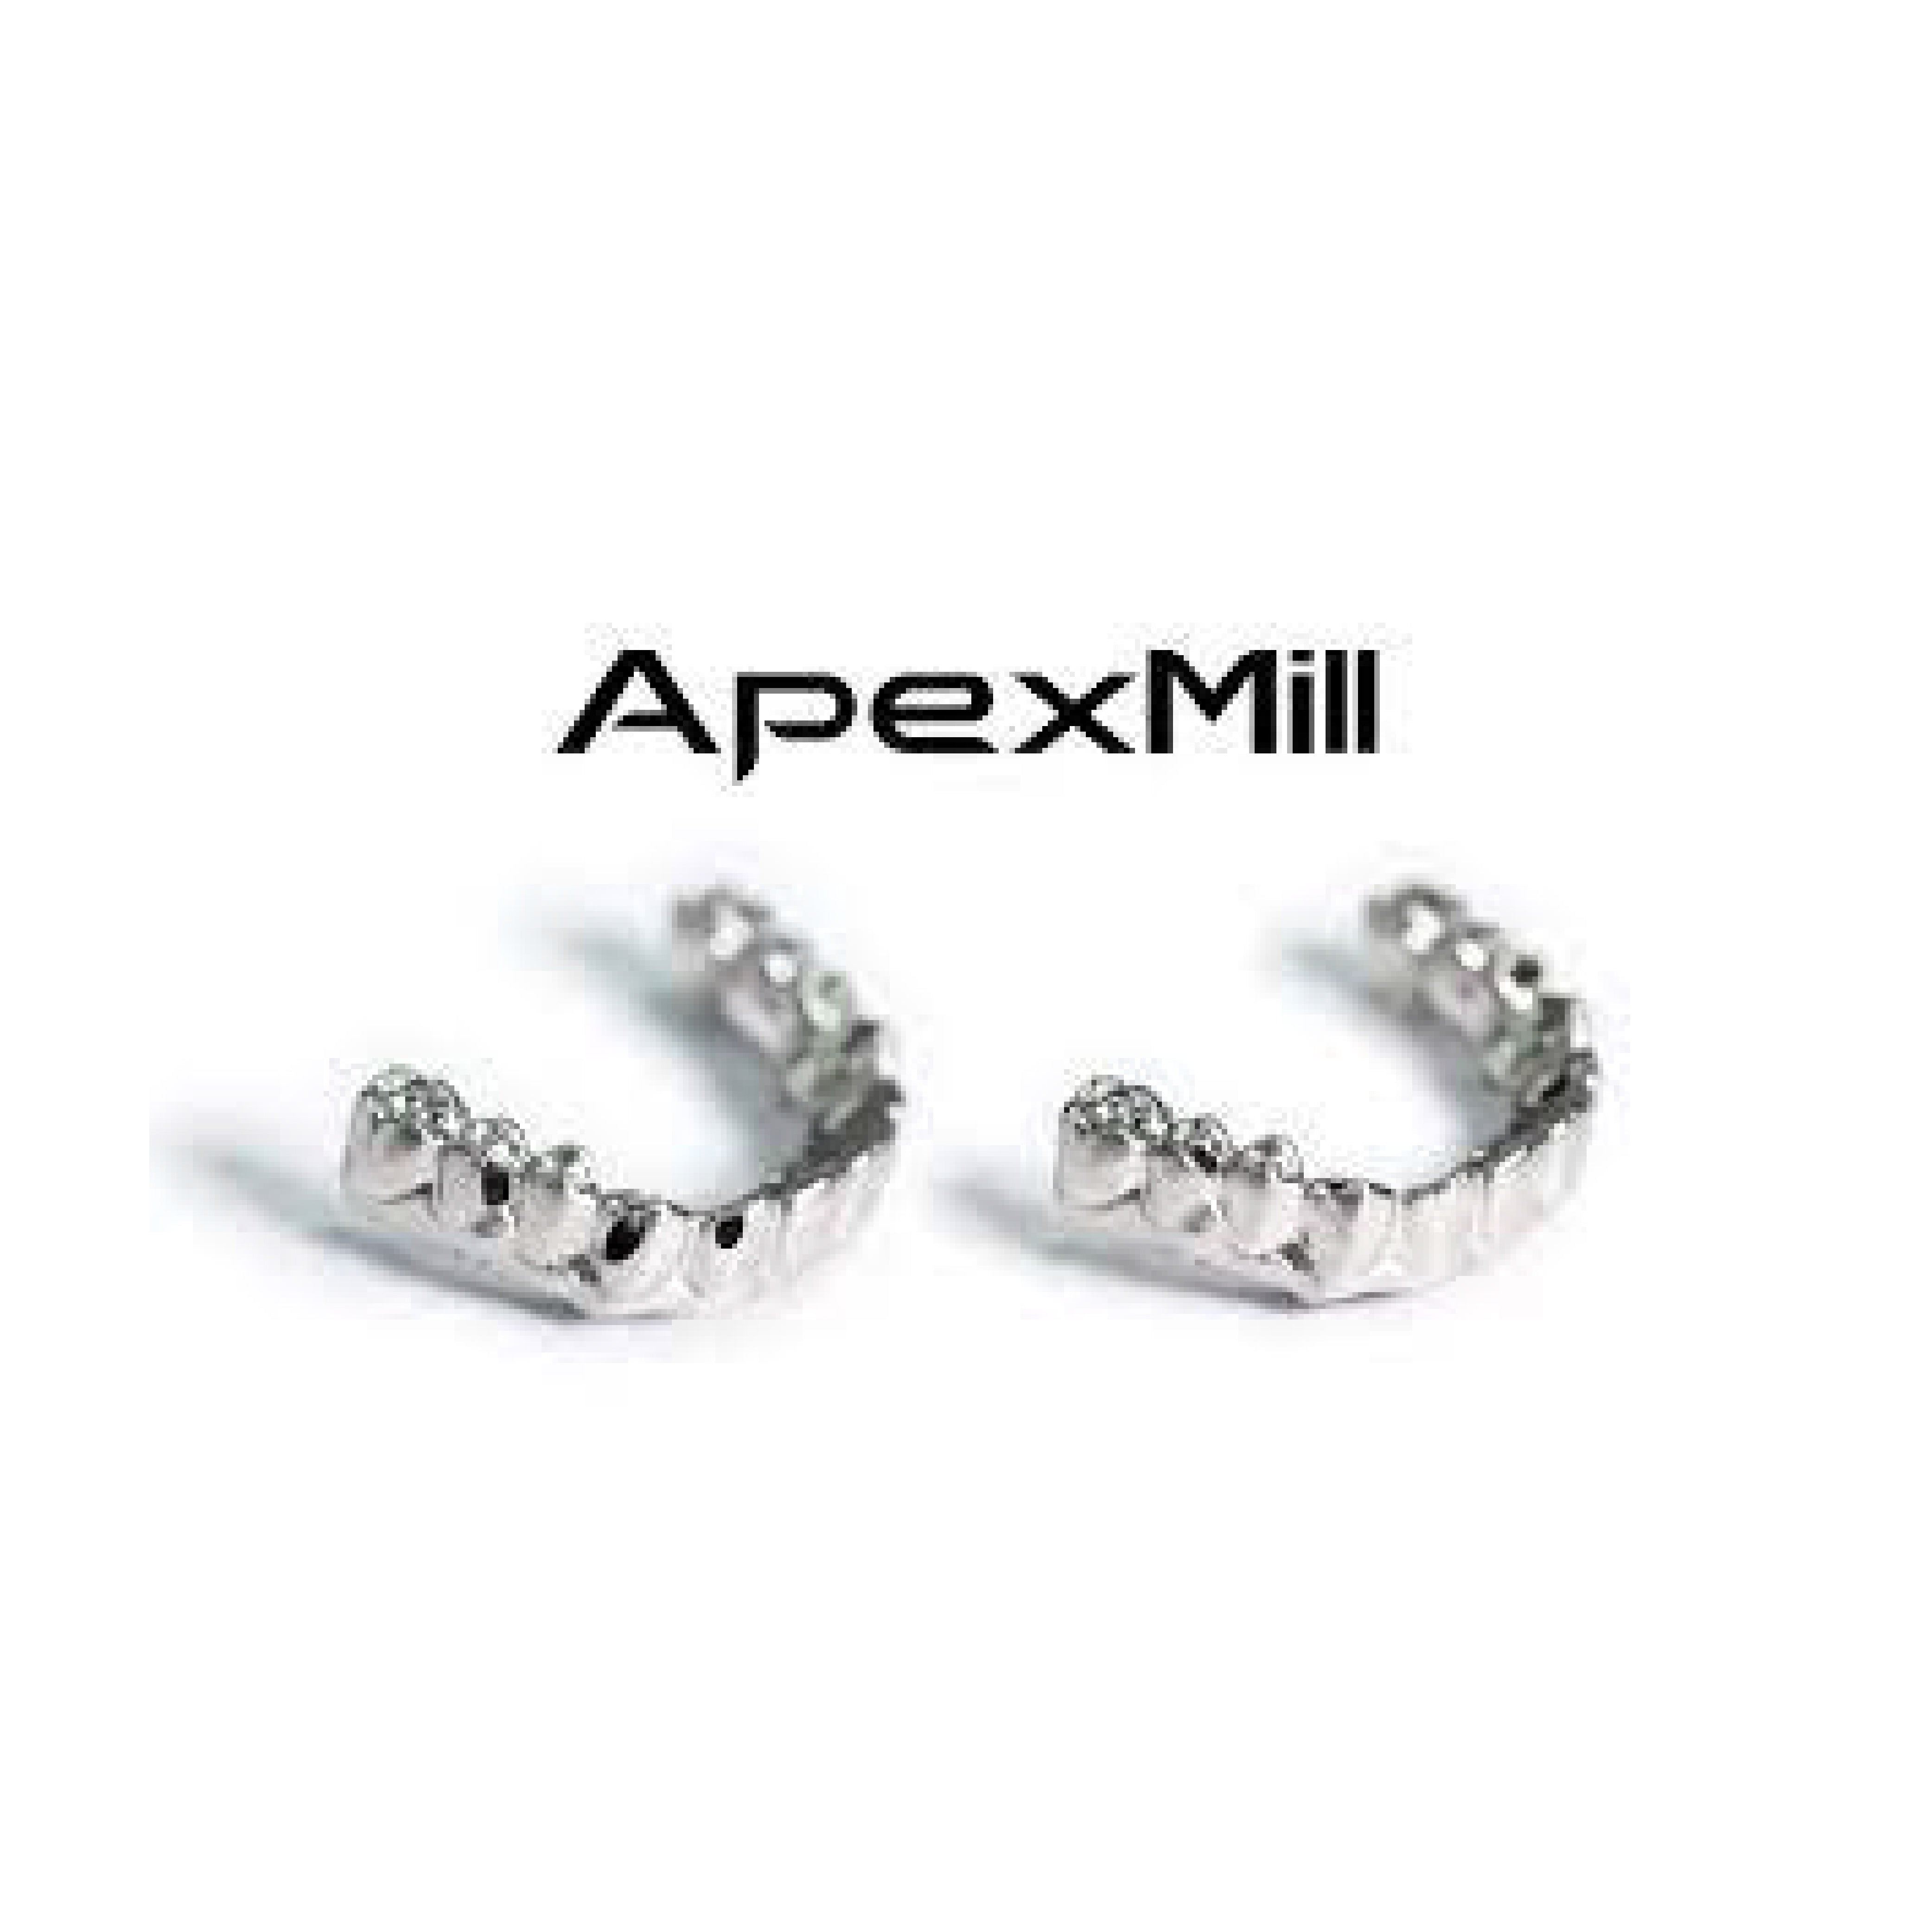 Apexmill